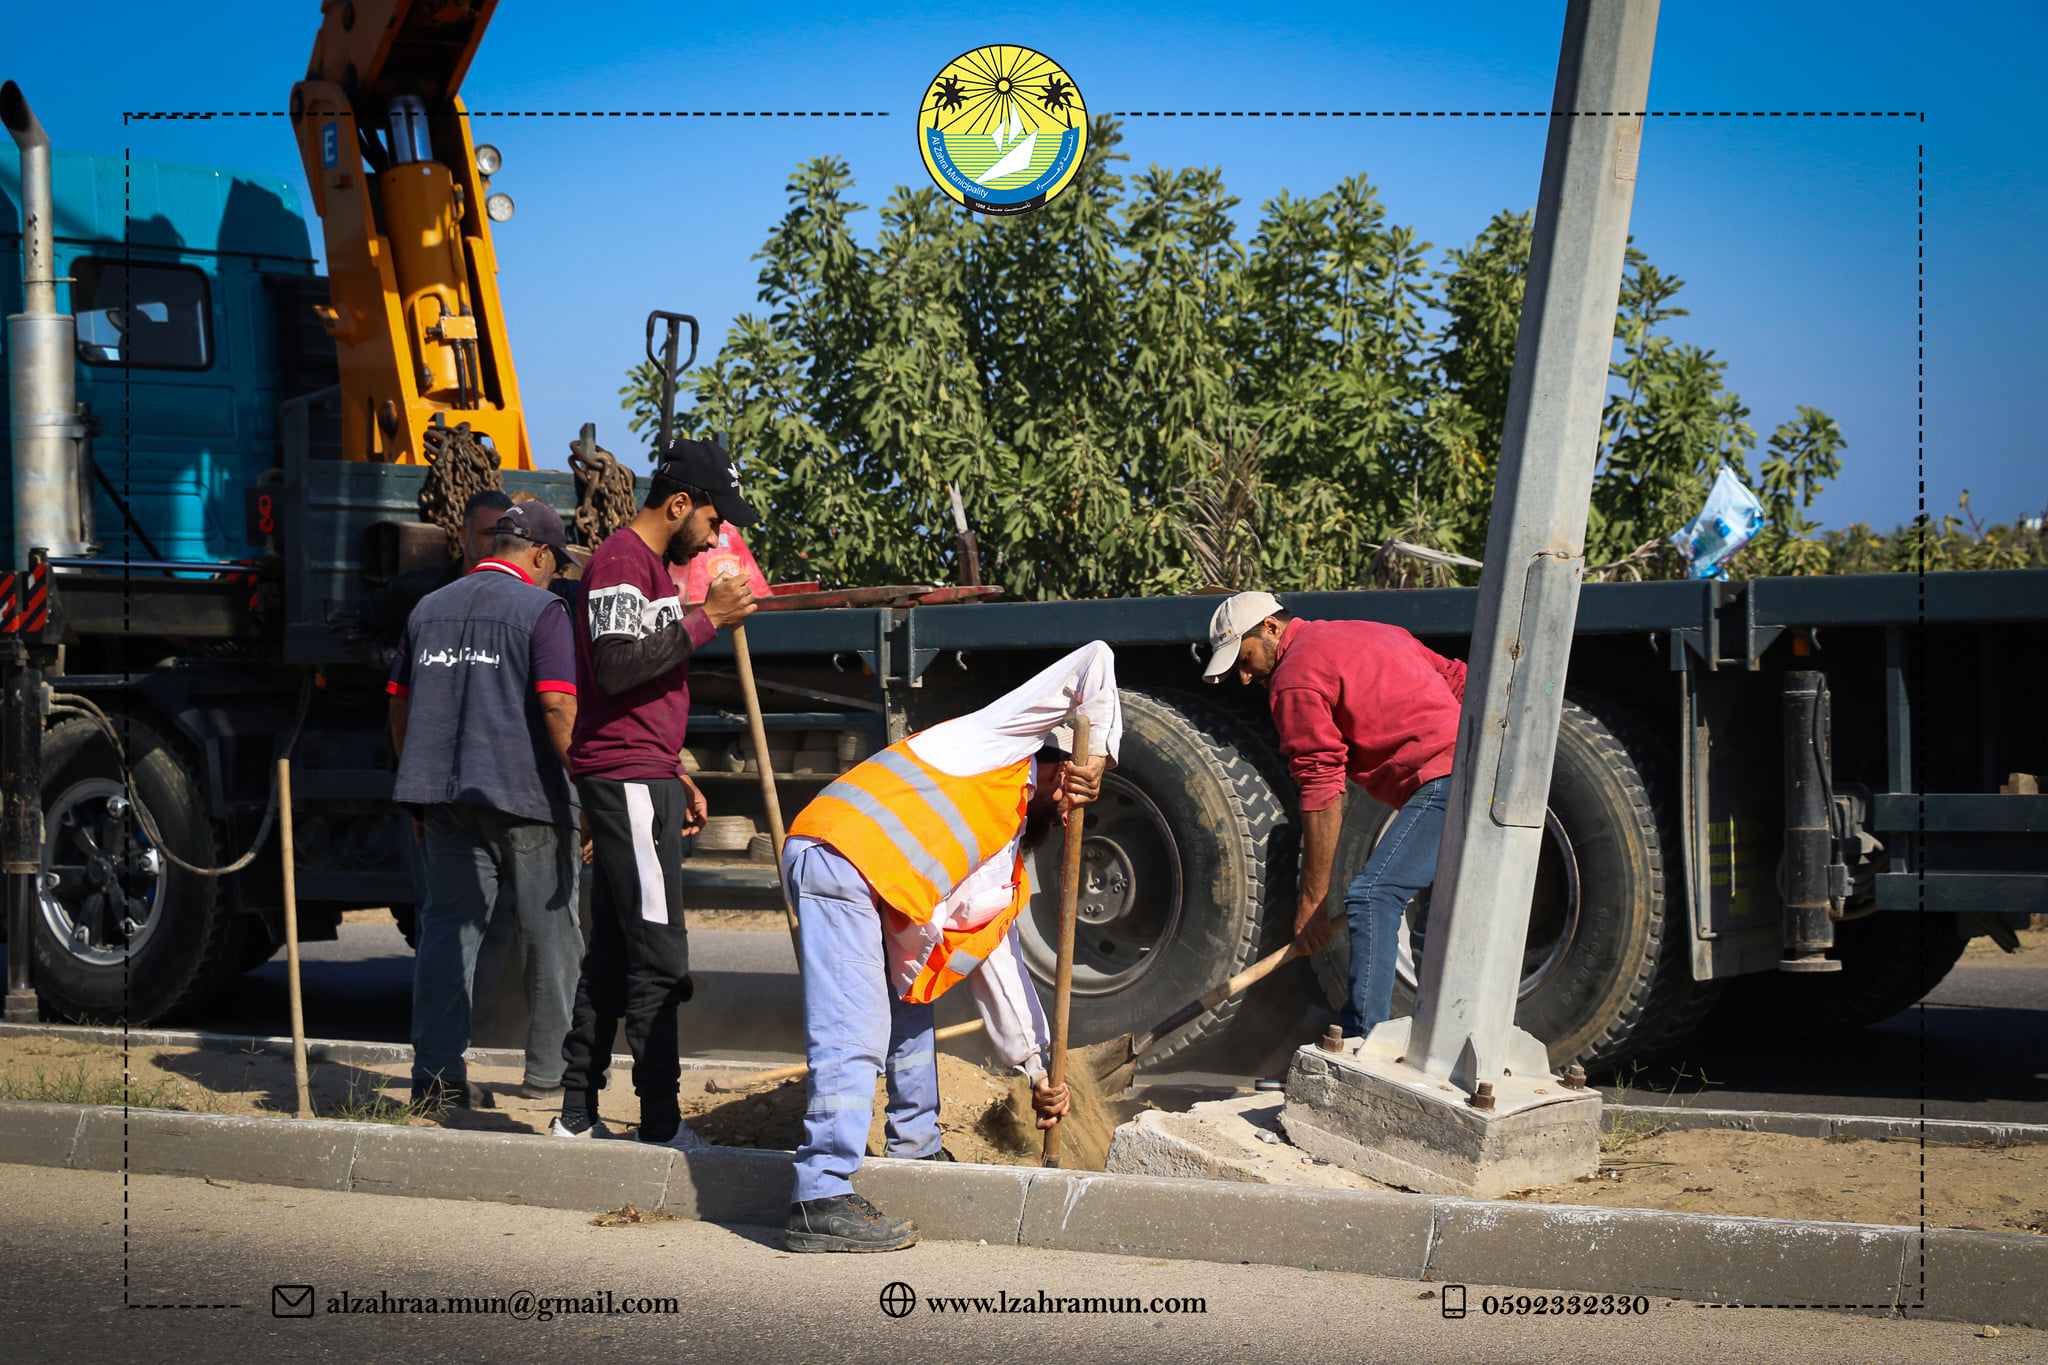 طاقم بلدية الزهراء  يقوم بصيانة أعمدة إنارة  متضررة  في شارع مدخل المدينة وشارع الرشيد.